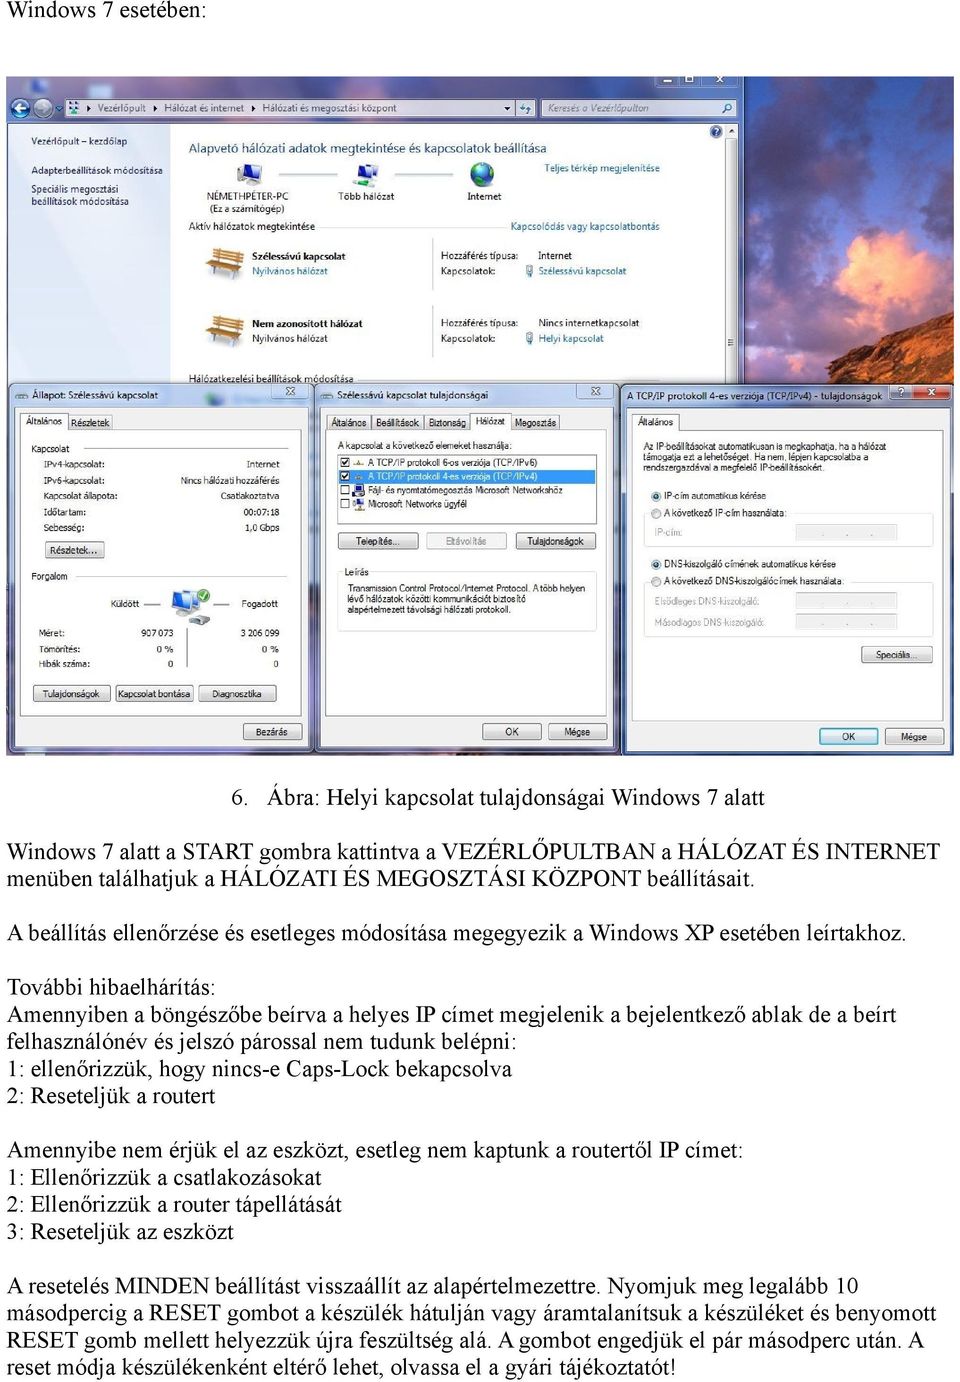 A beállítás ellenőrzése és esetleges módosítása megegyezik a Windows XP esetében leírtakhoz.